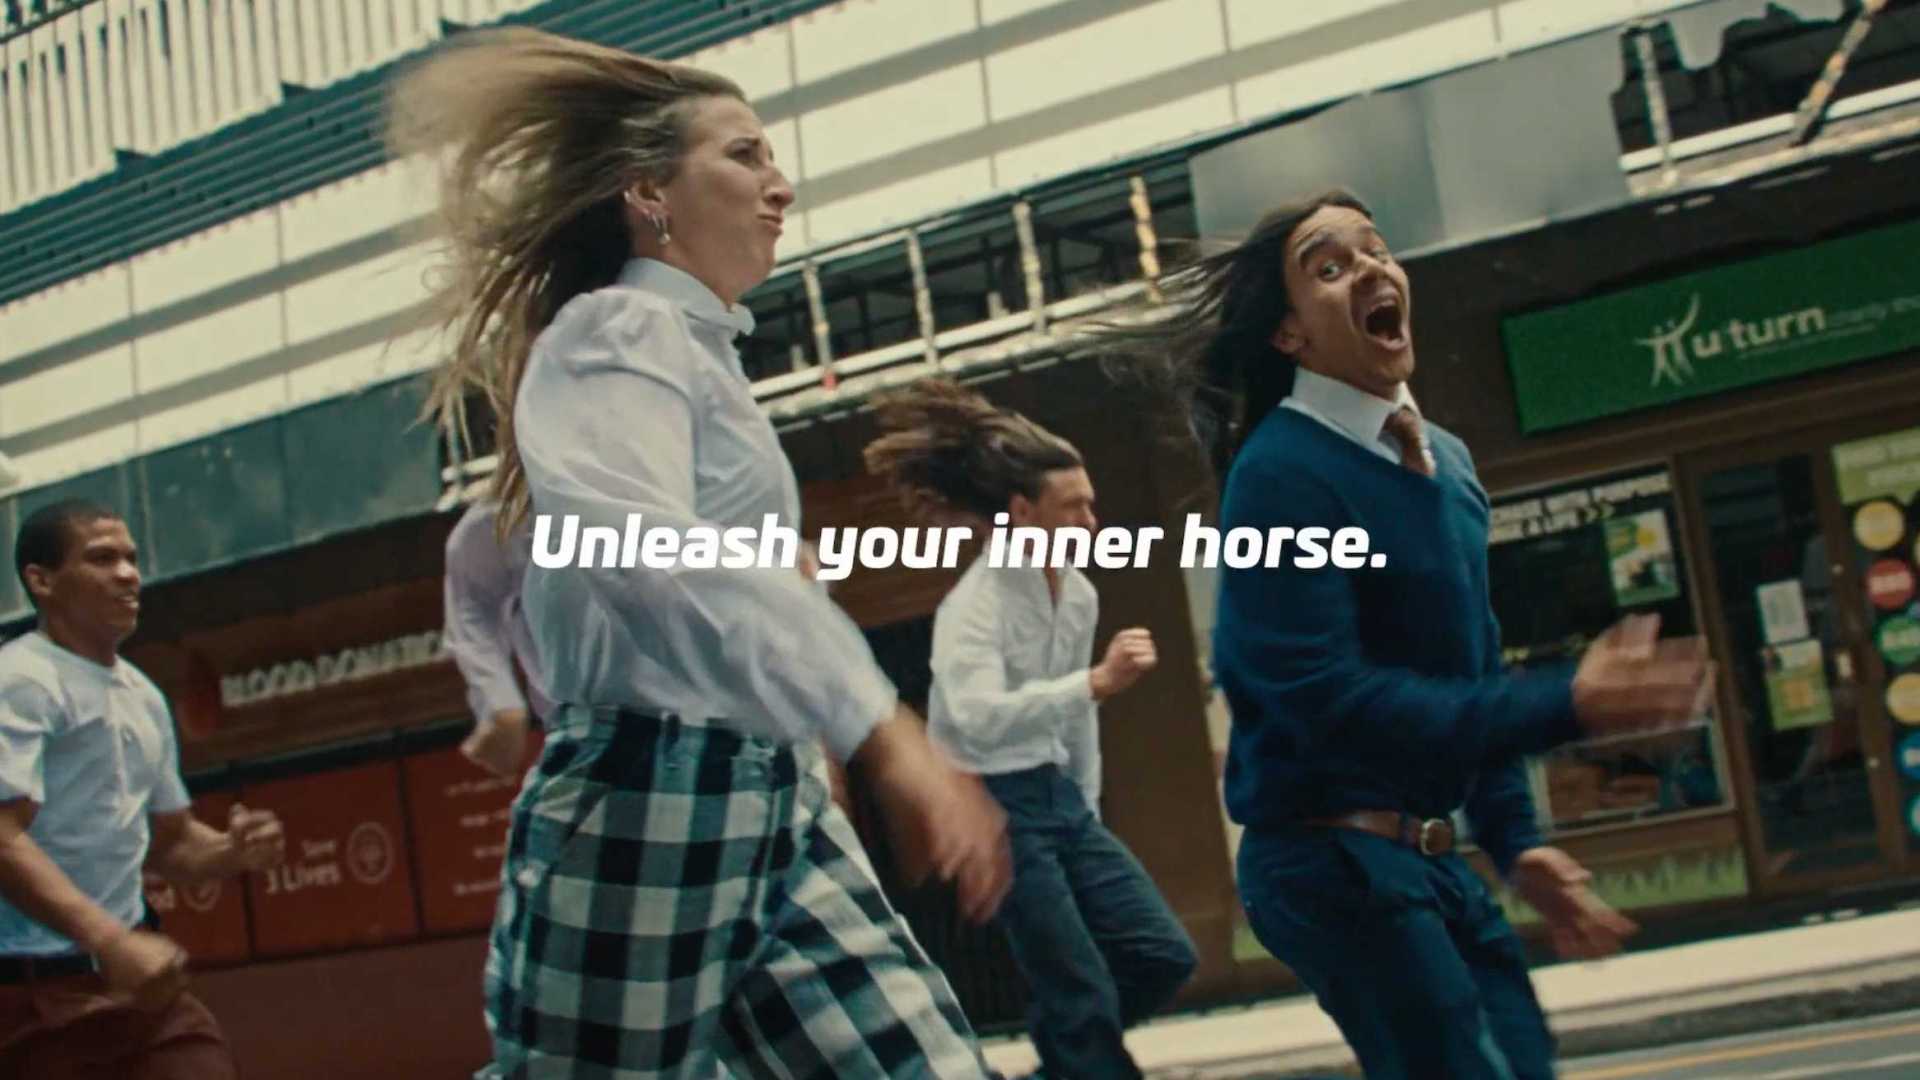 像马一样奔跑～瑞典马协会ATG创意脑洞广告《释放你内心的马》